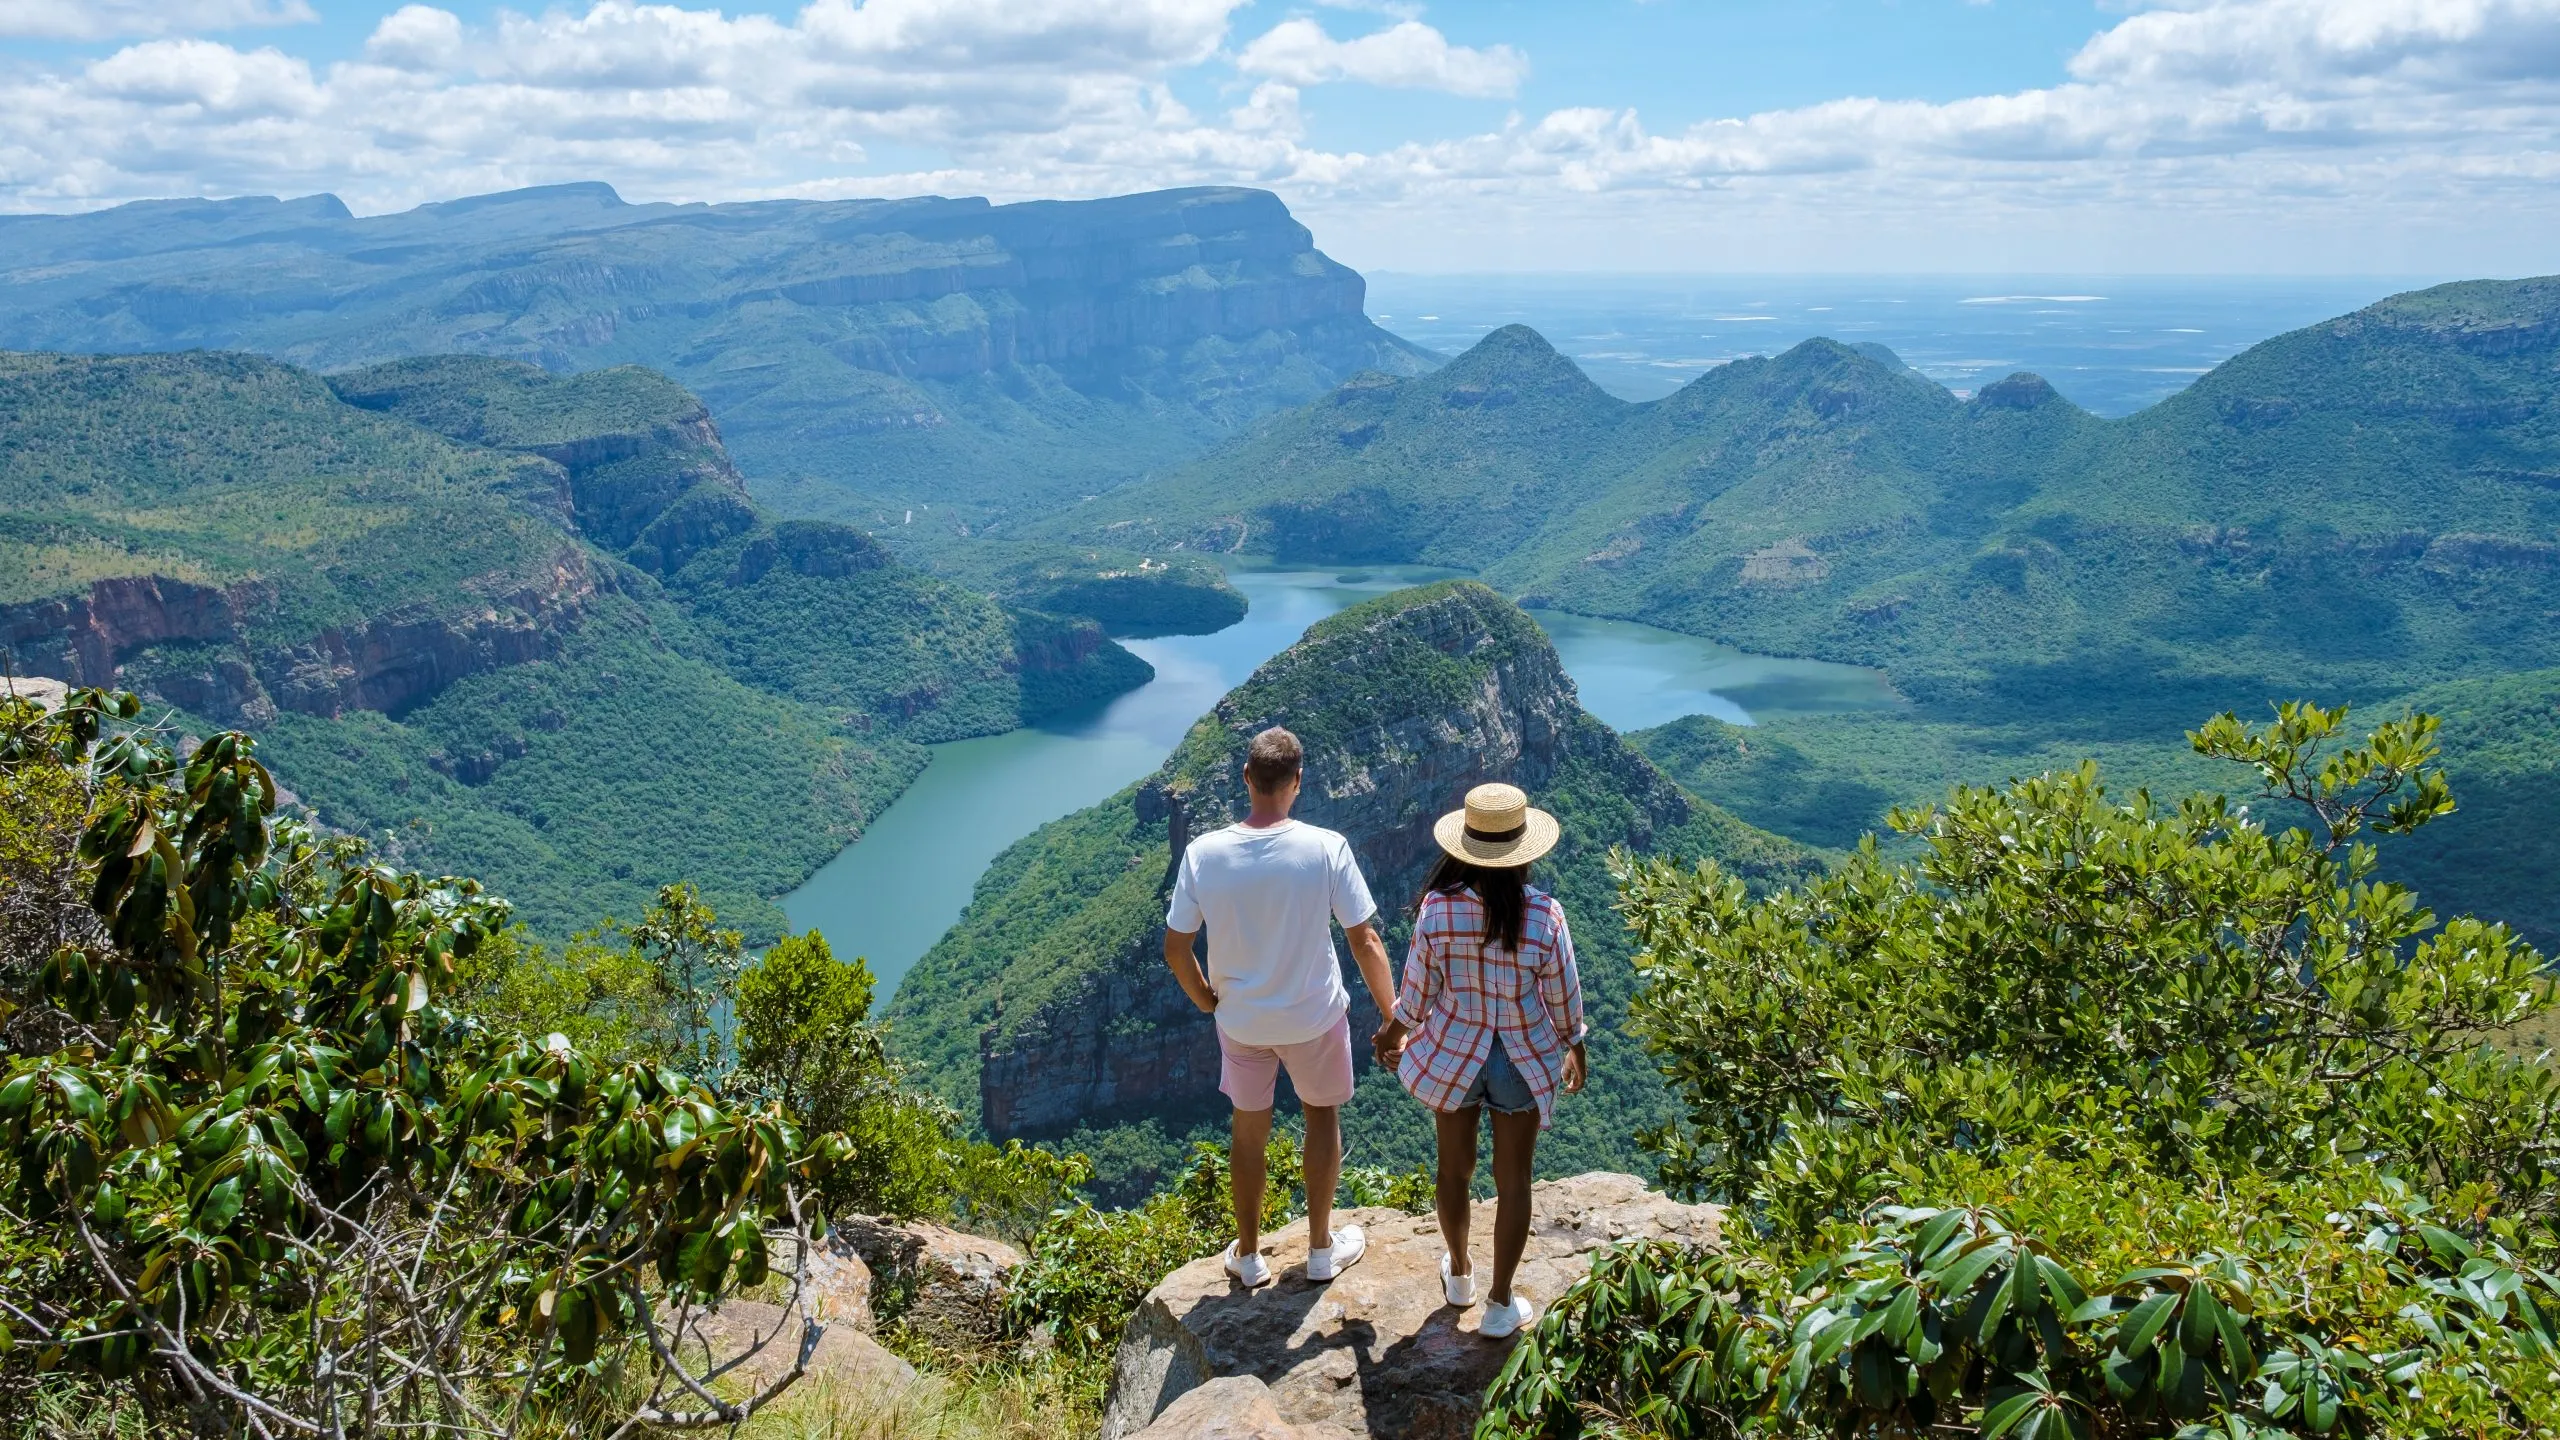 Panorama Route Südafrika, Blyde River Canyon mit den drei Rondavels, Blick auf drei Rondavels und den Blyde River Canyon in Südafrika. Asiatische Frauen und kaukasische Männer im Urlaub in Südafrika